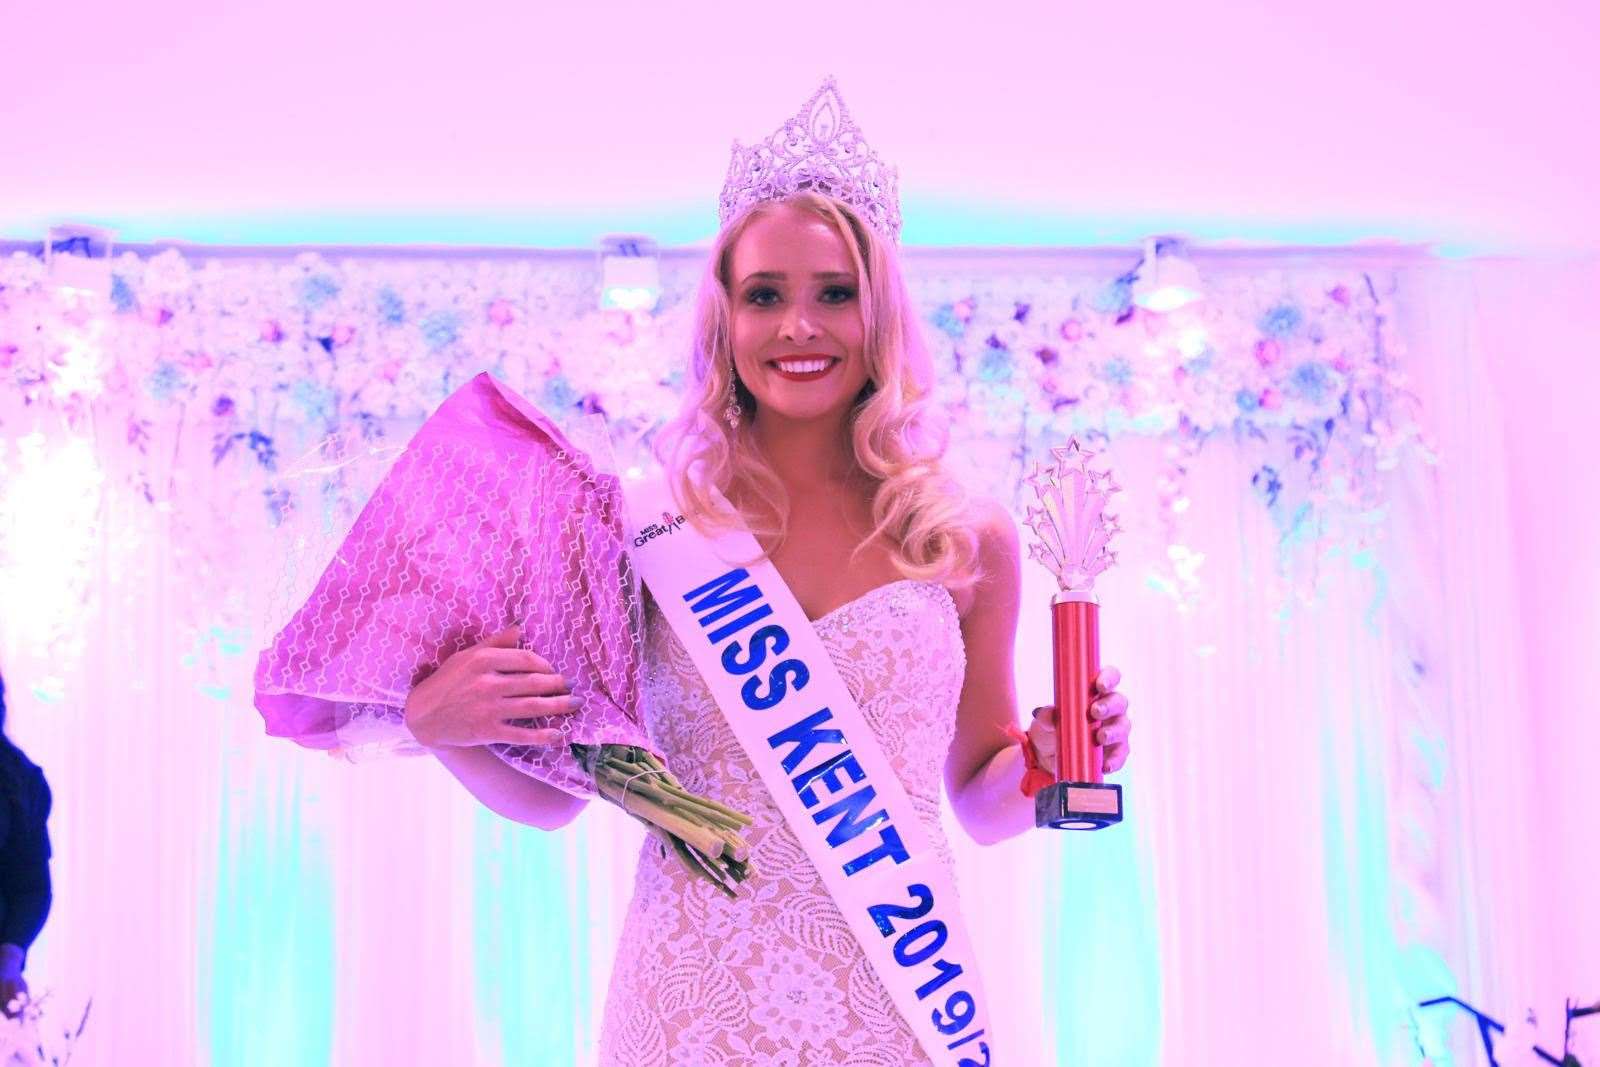 Zoe Hetherington won the regional finals of Miss Kent GB 2019 in September